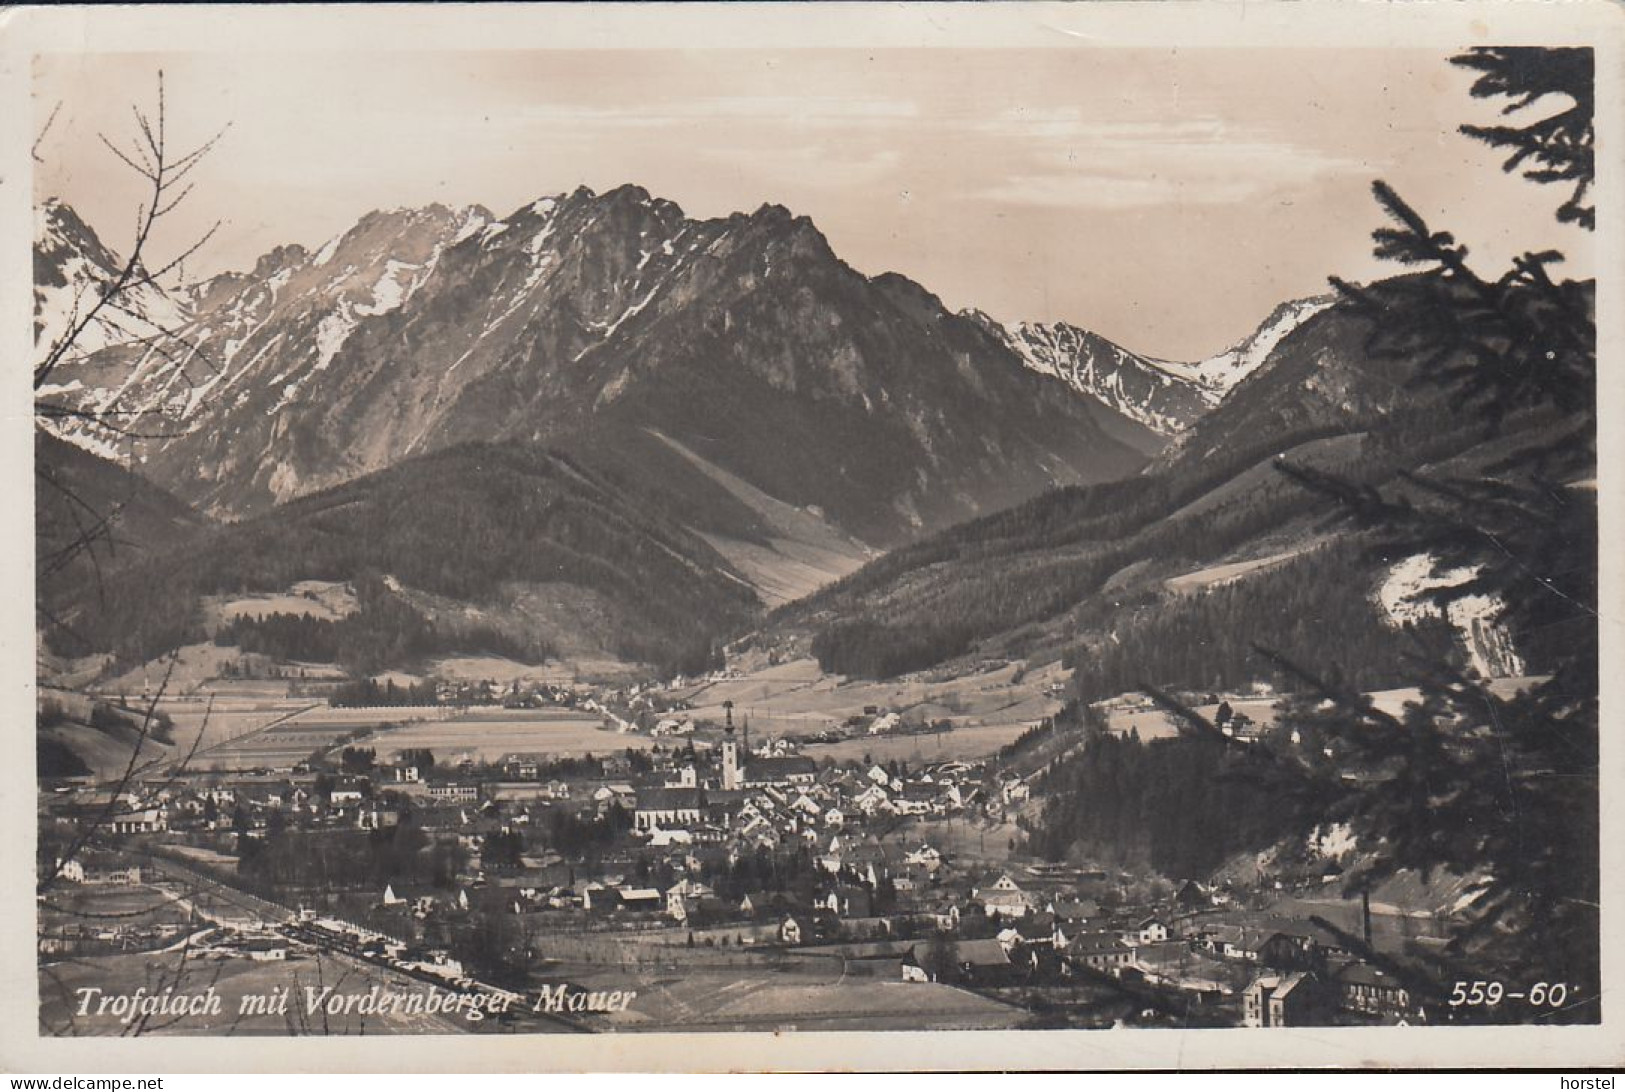 Austria - 8793 Trofaiach - Mit Vordernberger Mauer - Nice Stamp (1949) - Leoben